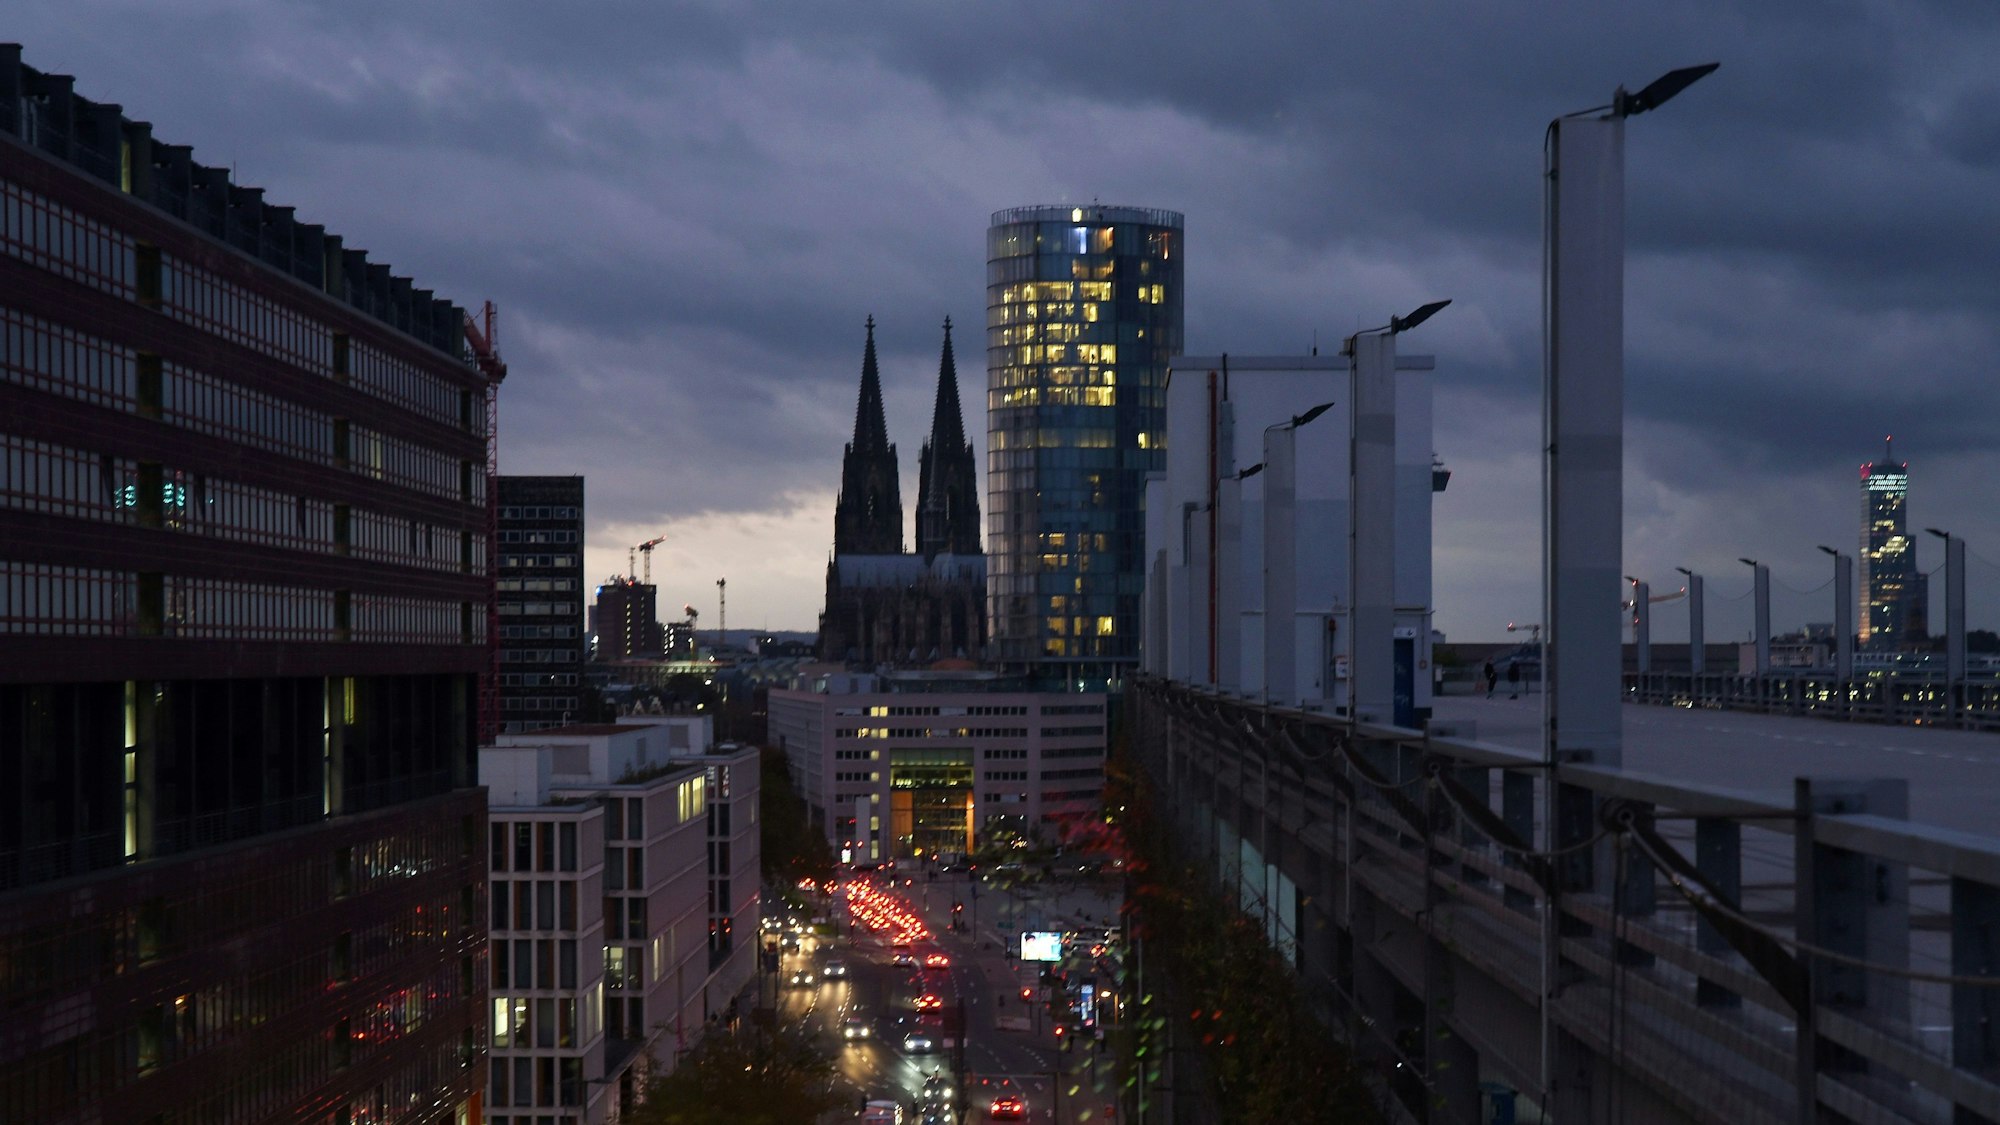 Blick auf den Kölner Dom mit bewölktem herbstlichem Abendhimmel als Hintergrund vom Deutzer Stadthaus aus fotografiert. Rechts im Bild: das Hochhaus Köln-Triangel, in dem die Metropolregion Rheinland ihren Sitz hat.